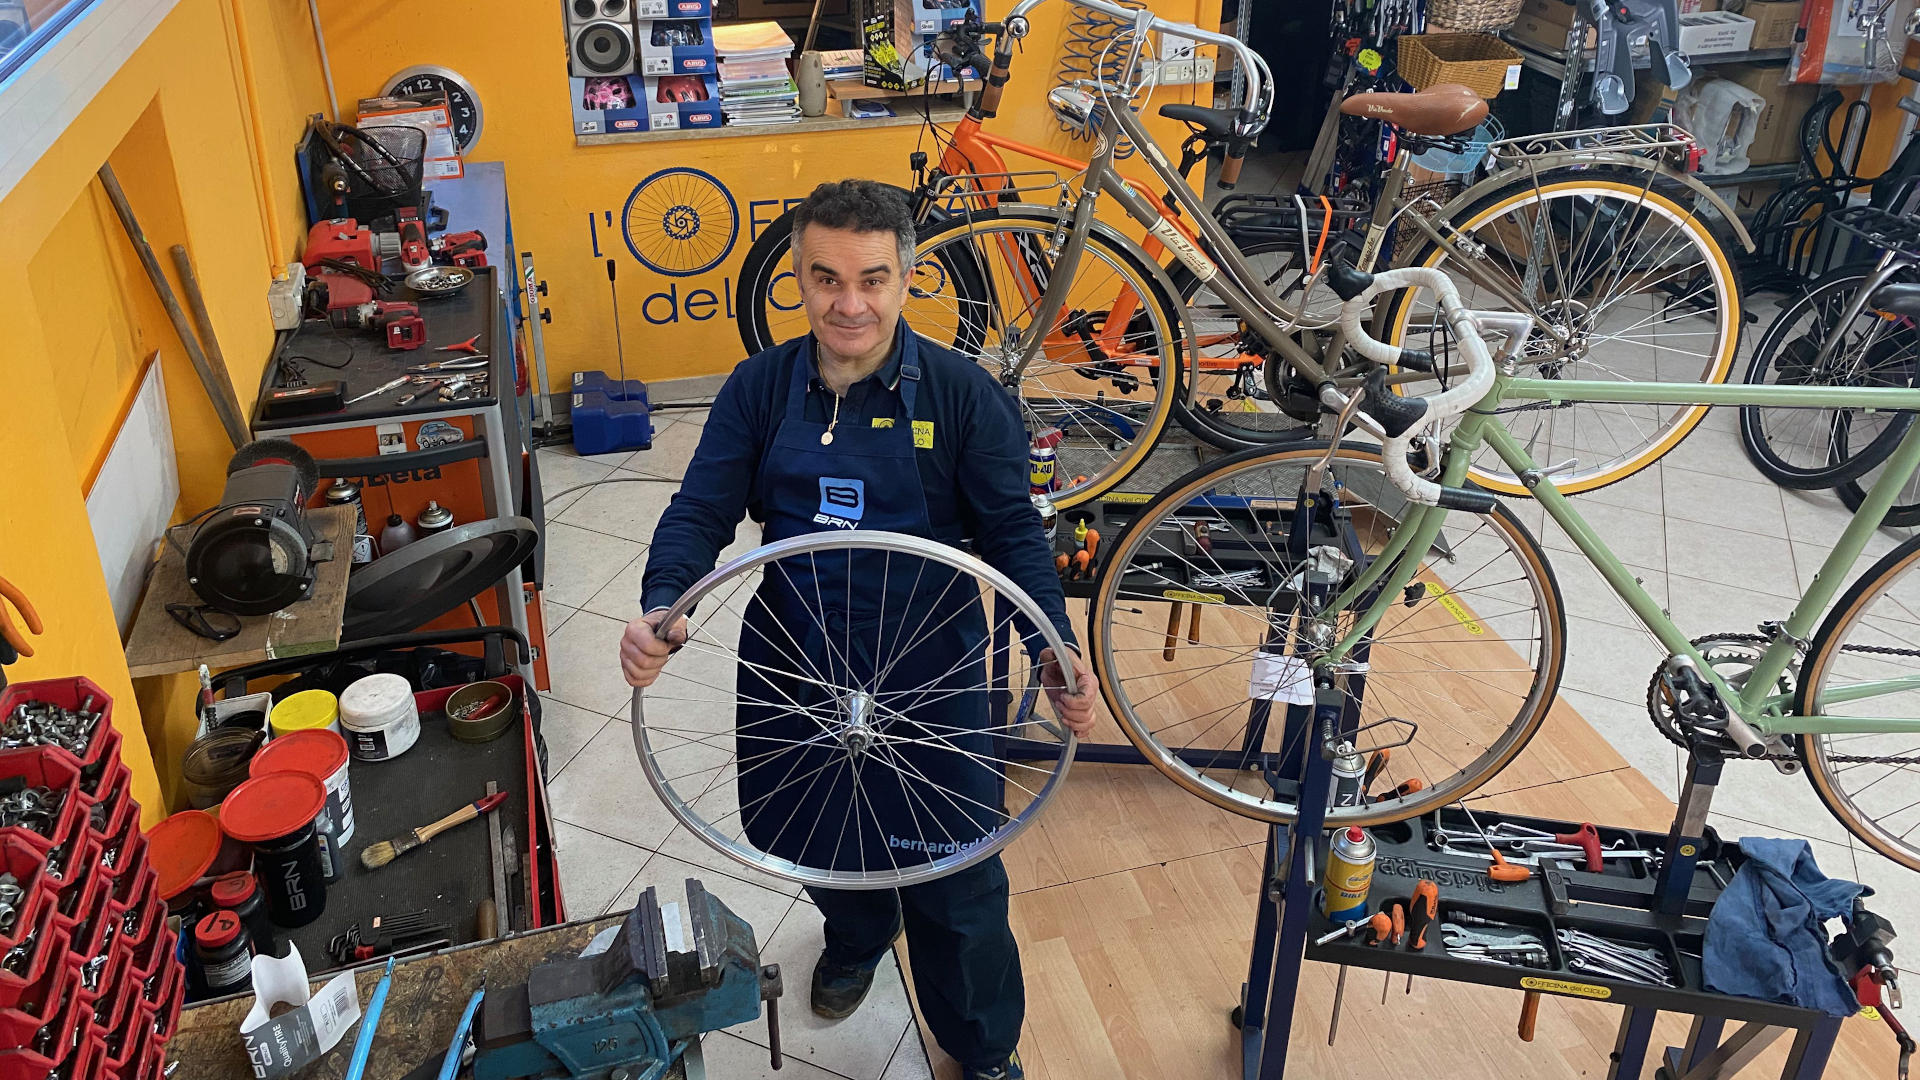 L'Officina del Ciclo, riparazioni e vendita biciclette, biciclette elettriche, cargo e mini-van a Rimini